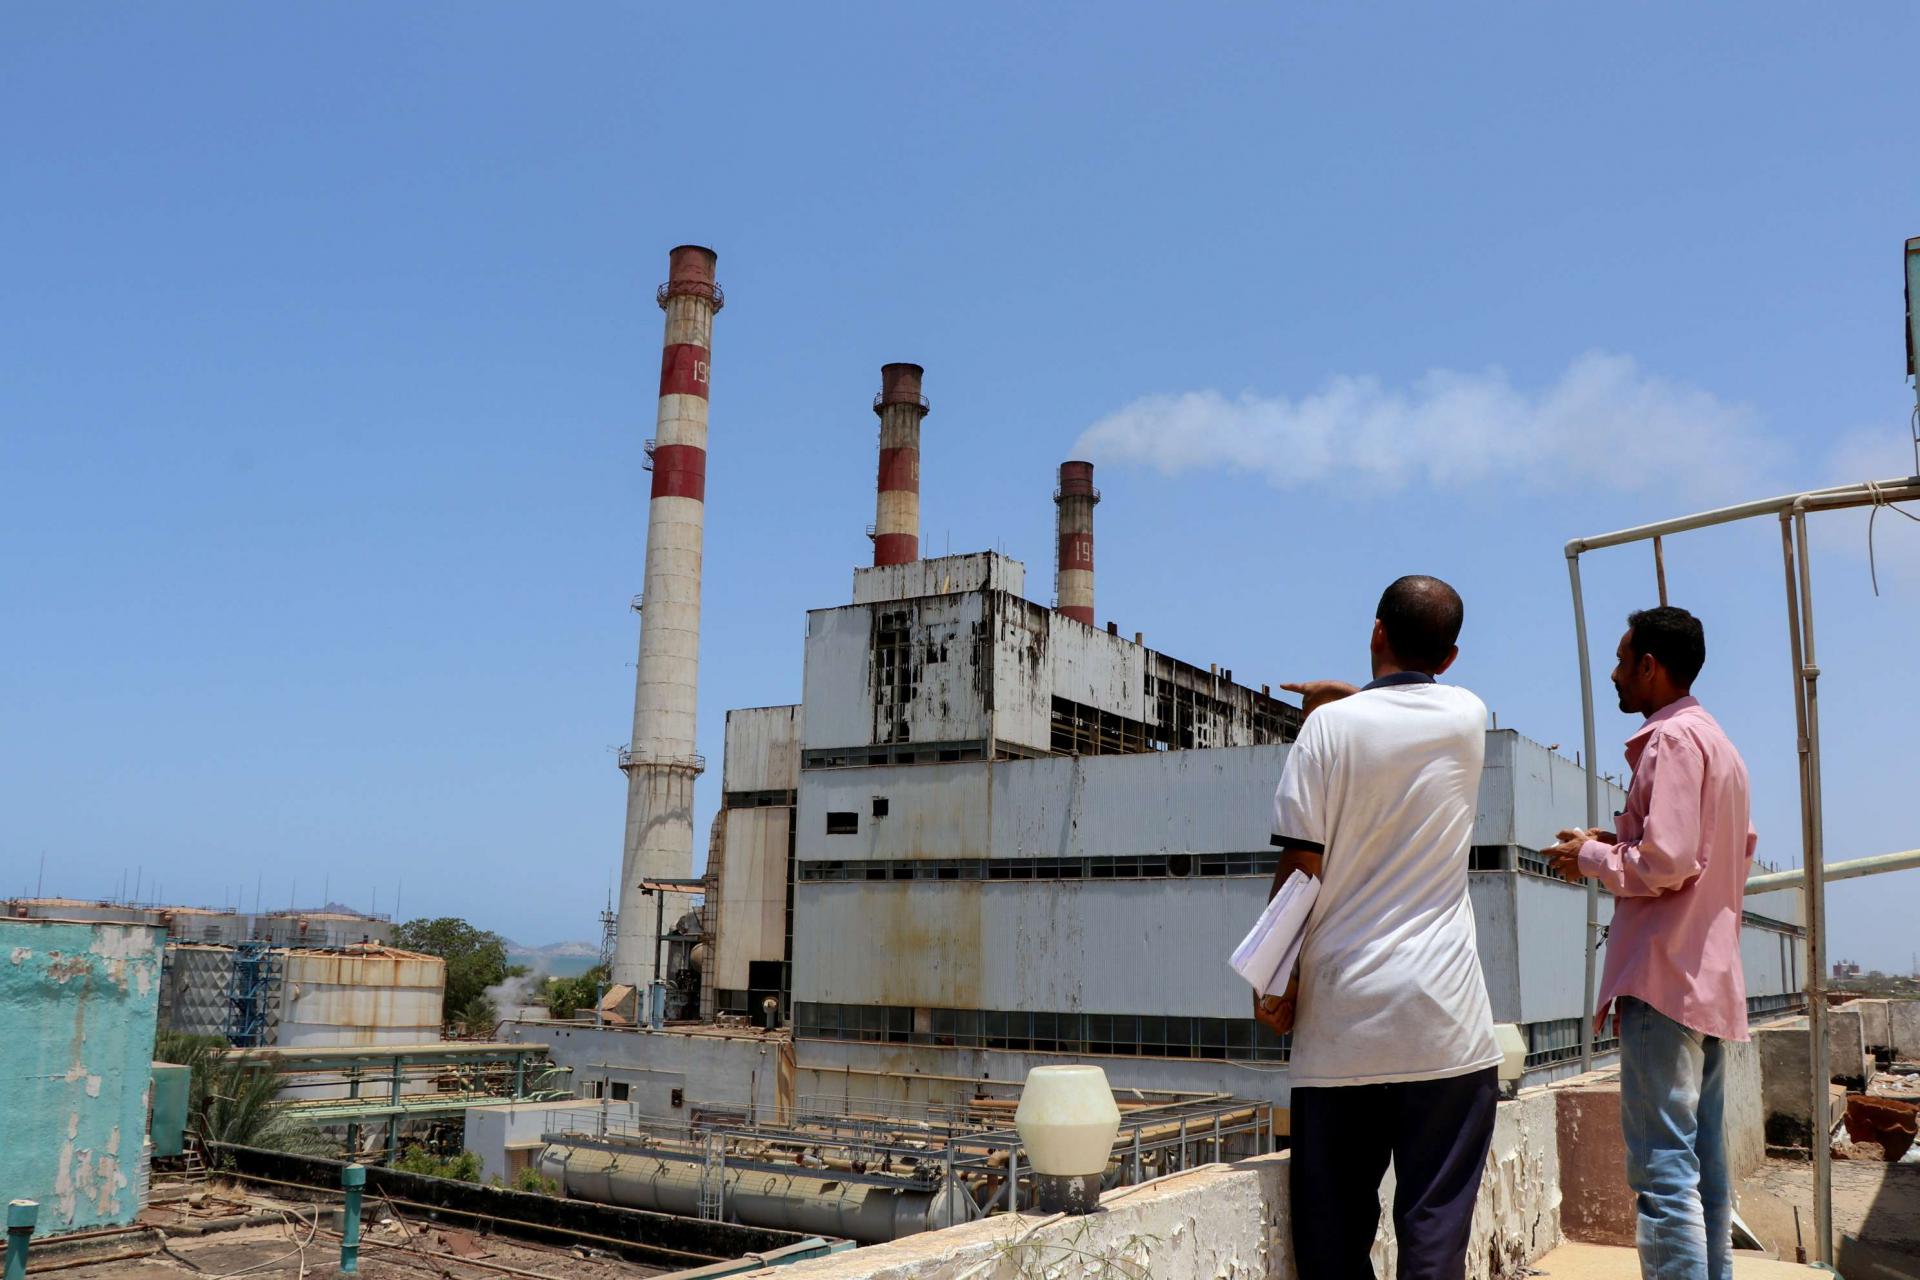 قطاع الكهرباء لا يزال متهالكا بعد ست سنوات على تحرير عدن من حركة الحوثي